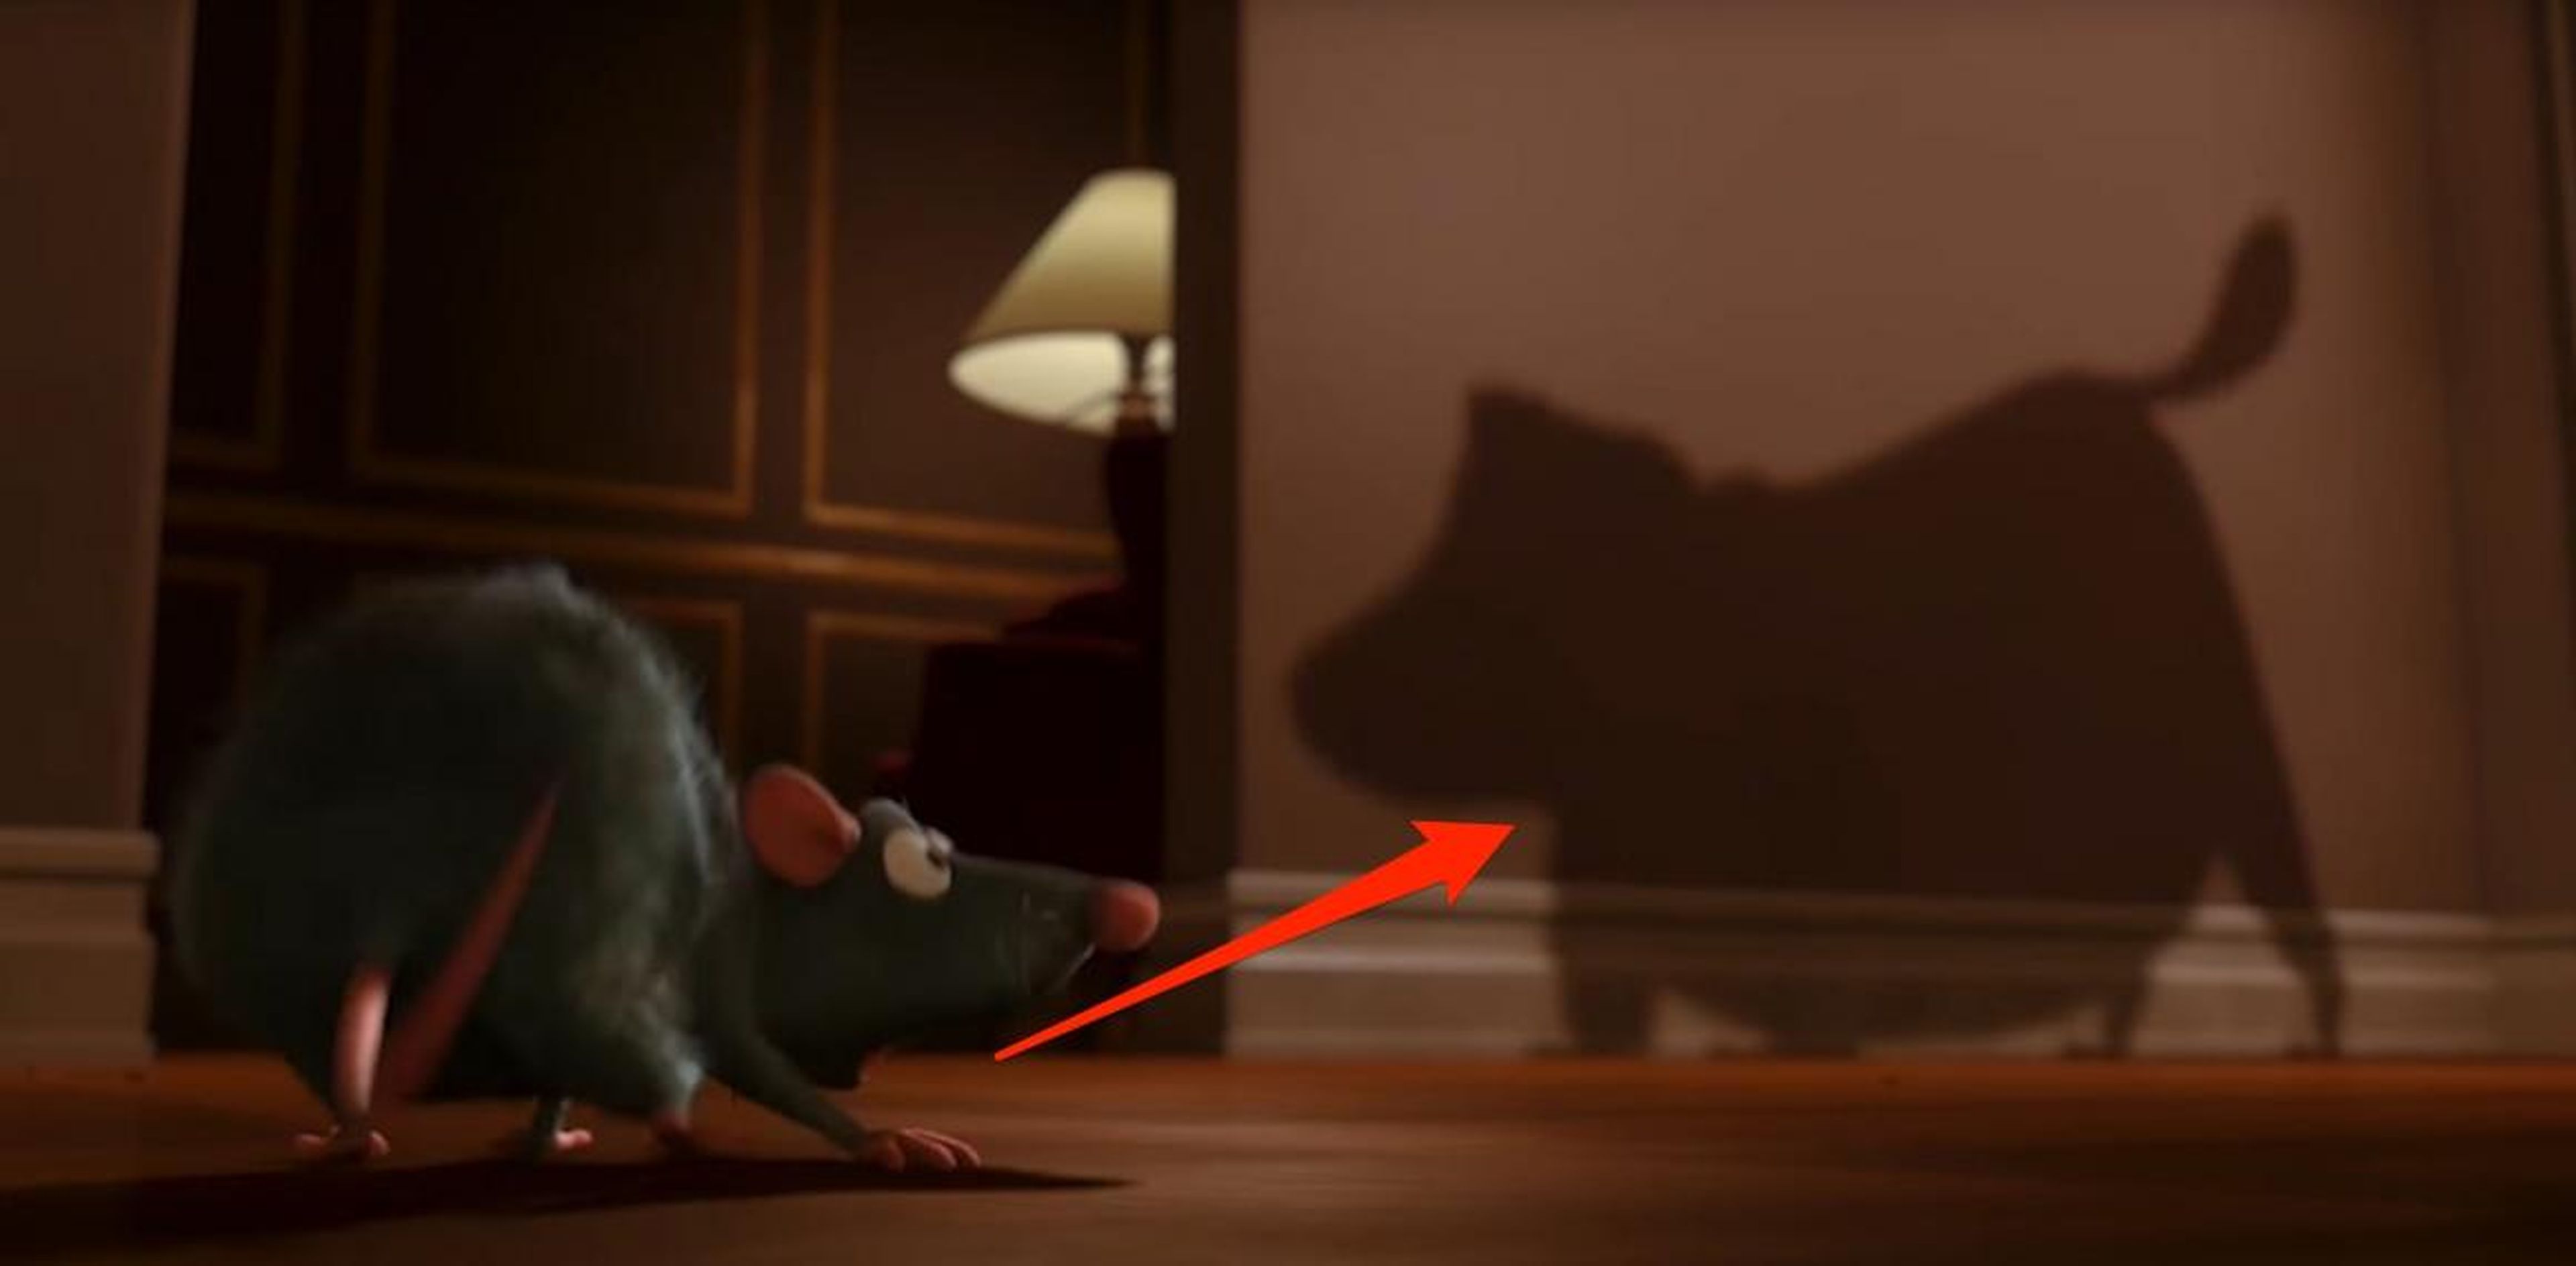 Cuando vuelves a ver "Ratatouille", sabes exactamente quién es este perro.